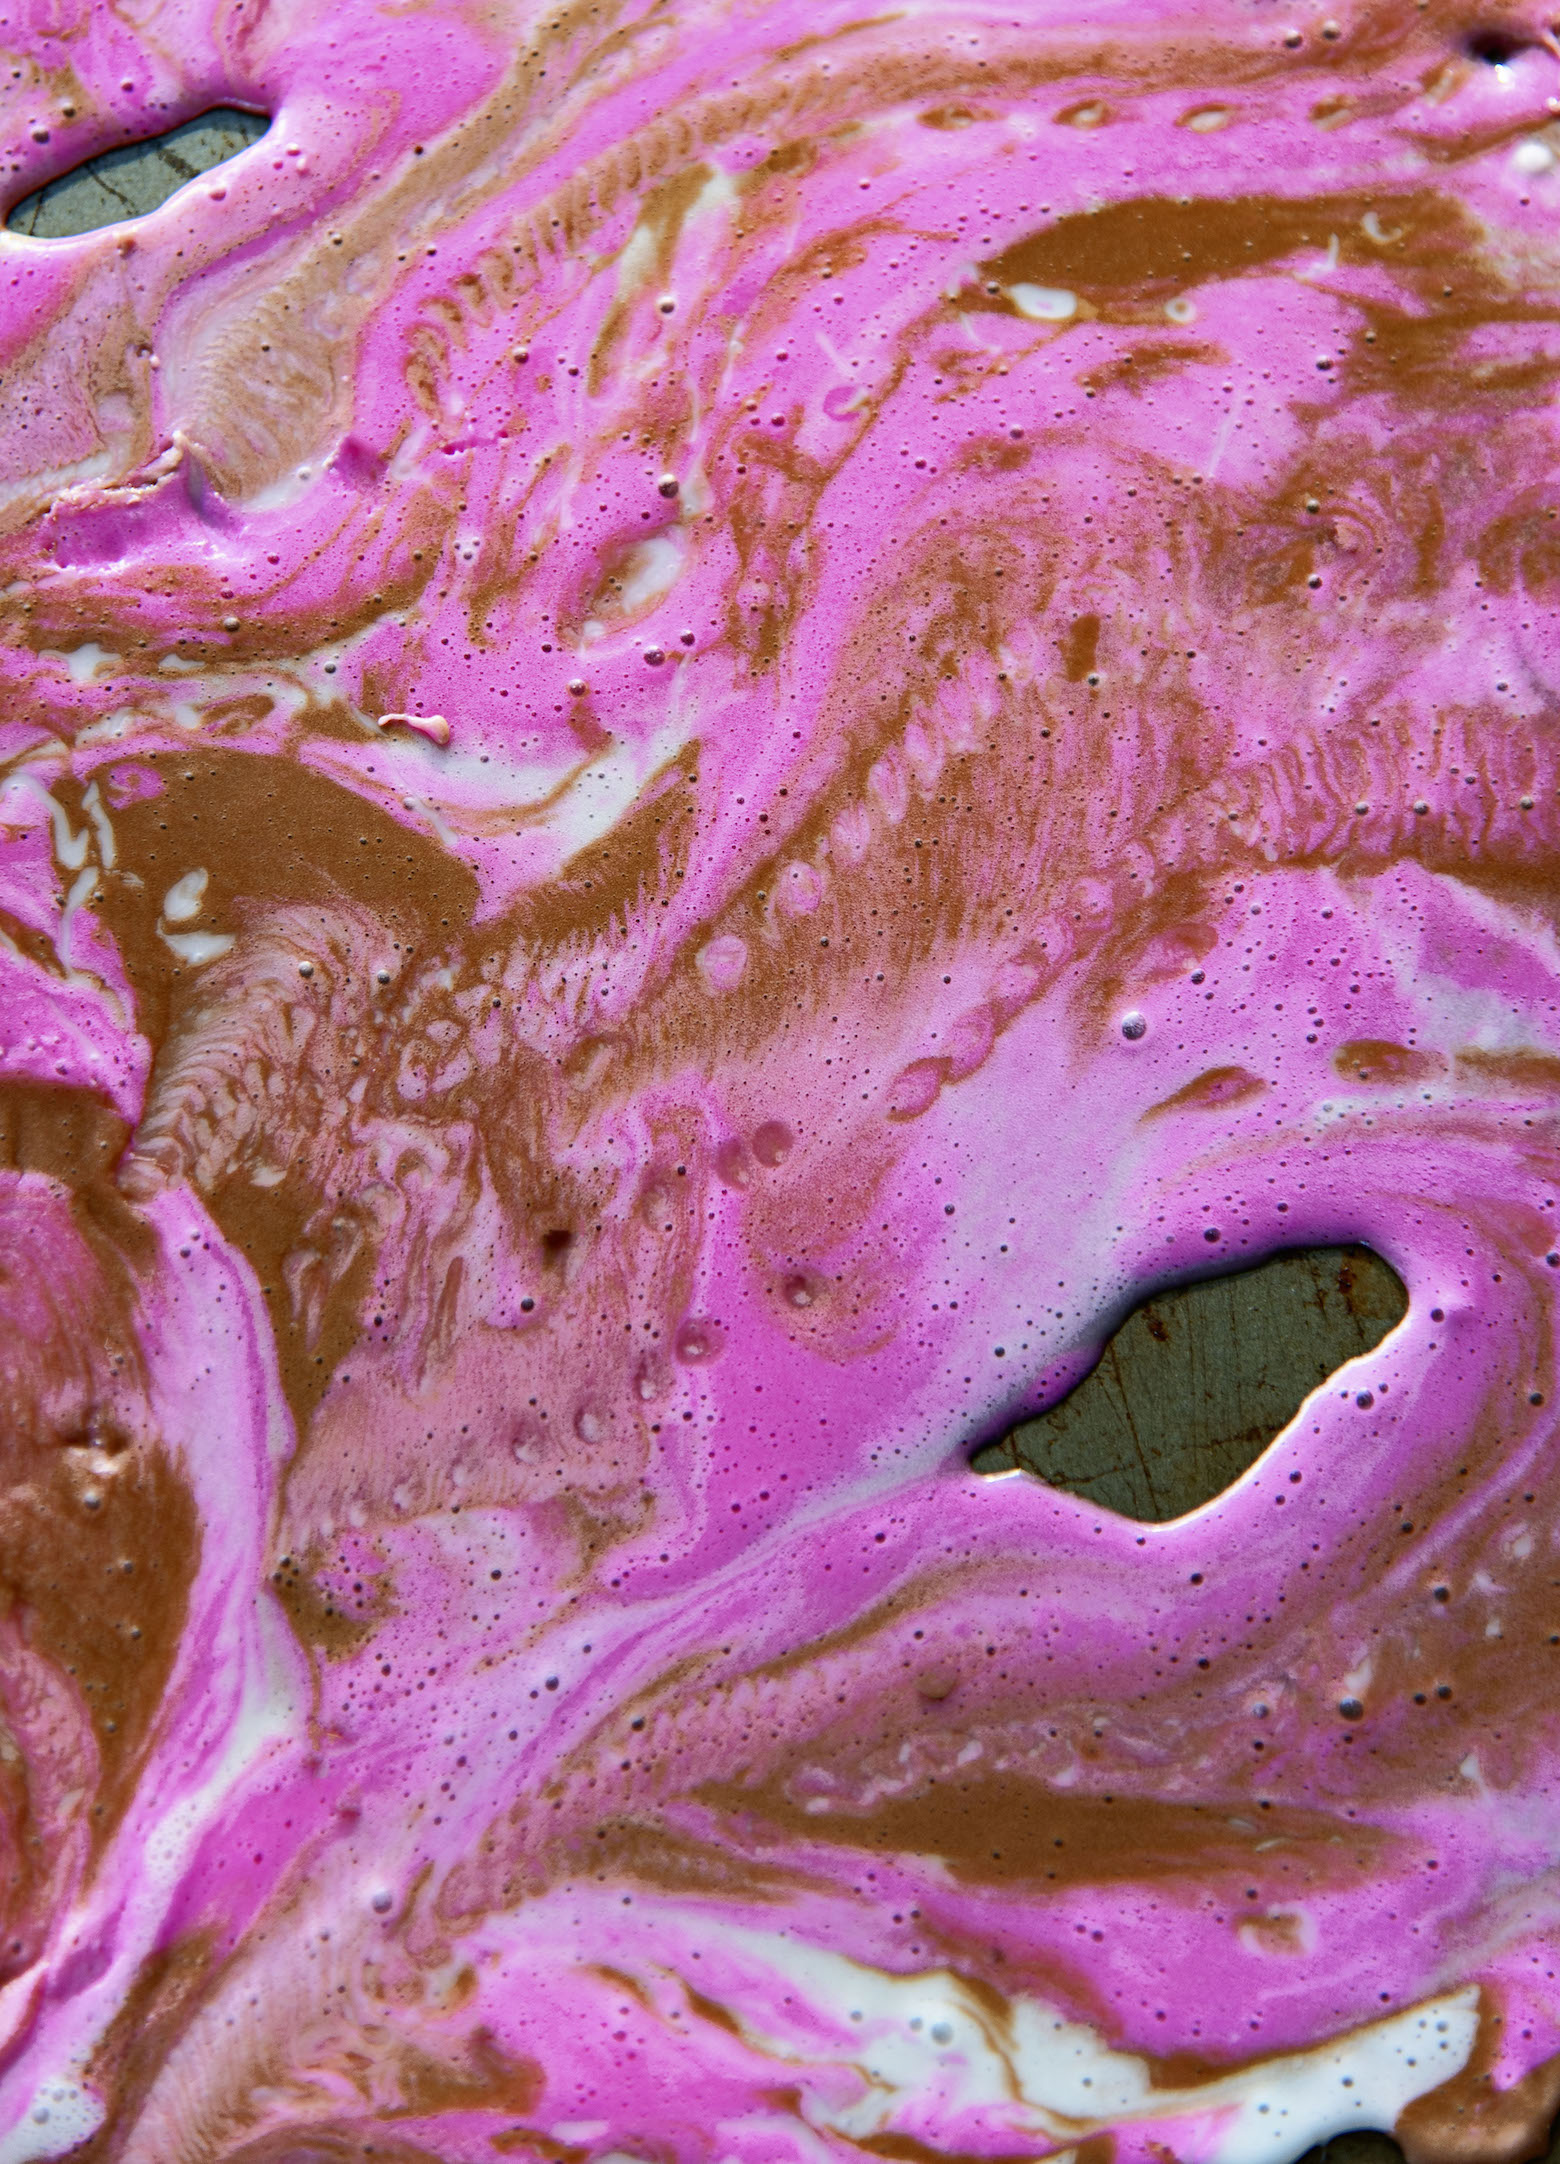 Swirl of the ice cream glazes